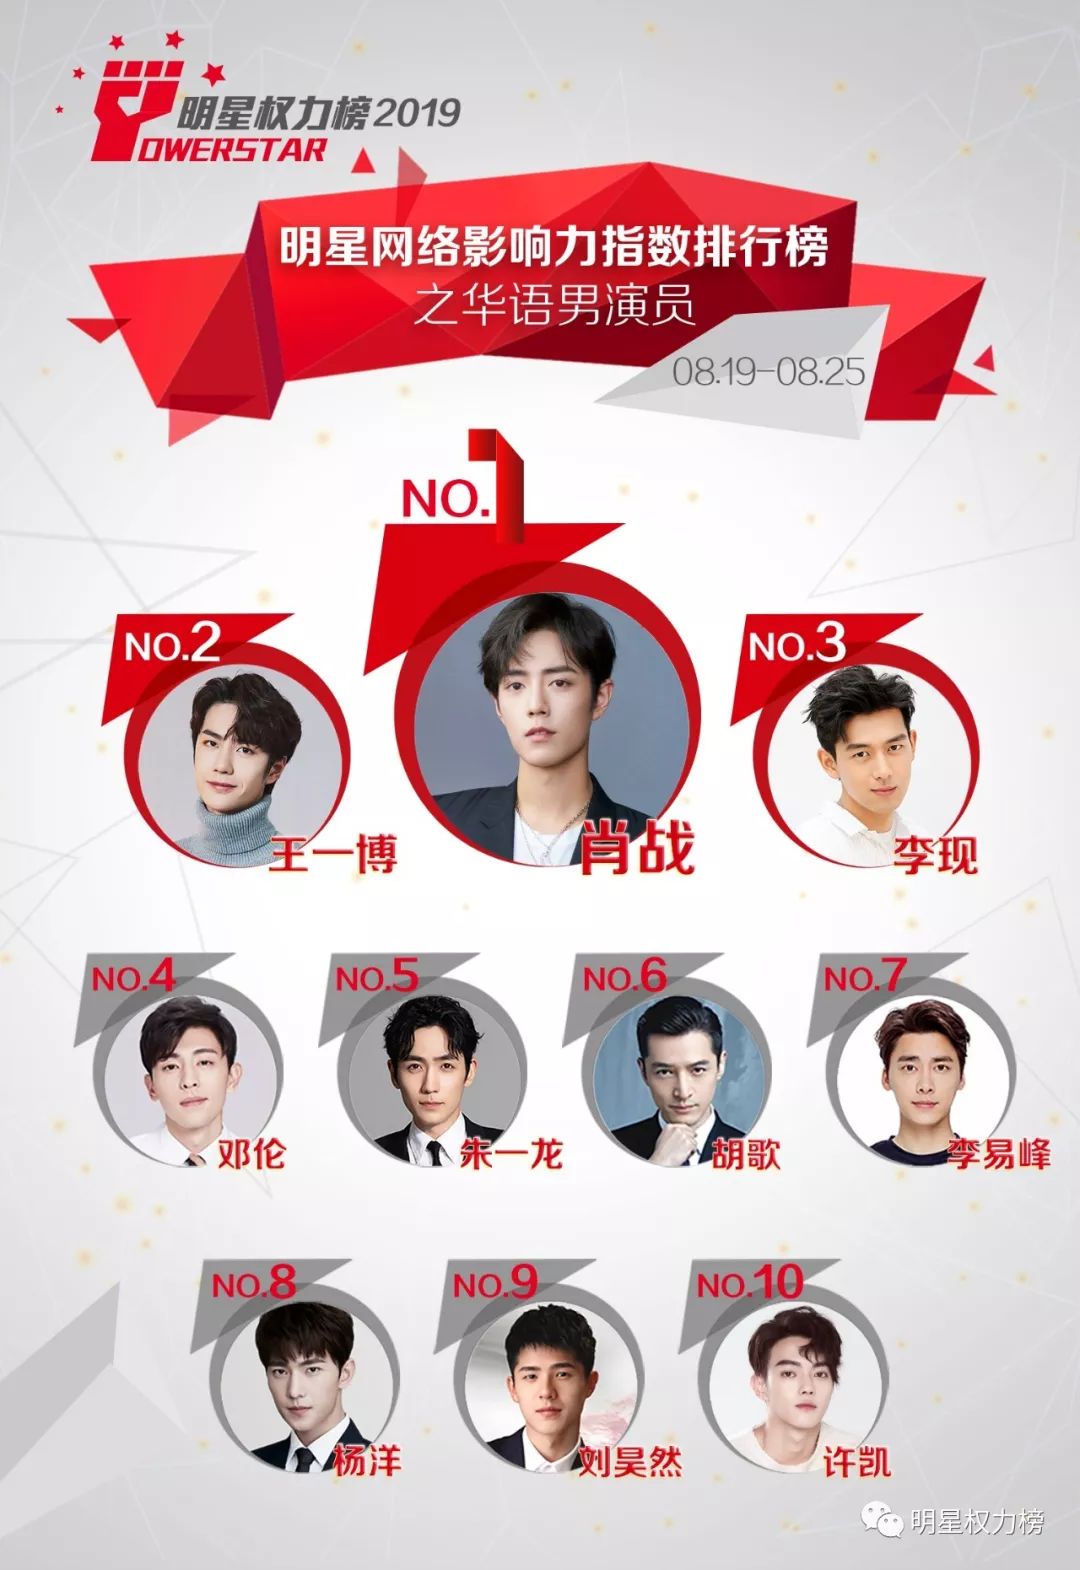 明星网络影响力指数排行榜第214期榜单之华语男演员Top10